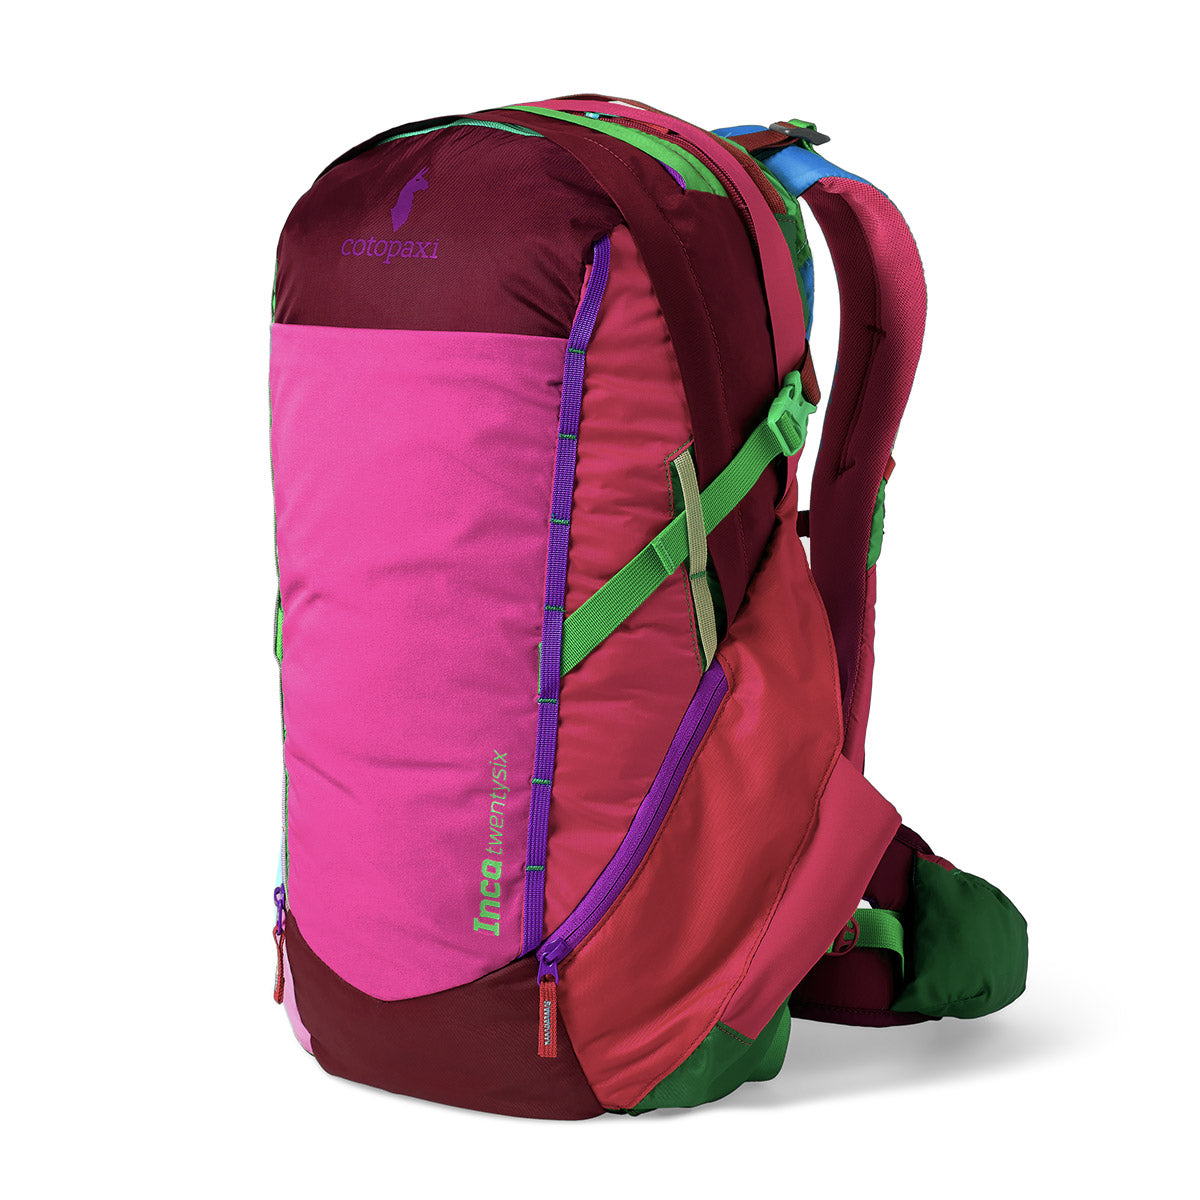 Inca 26L backpack - Del Día